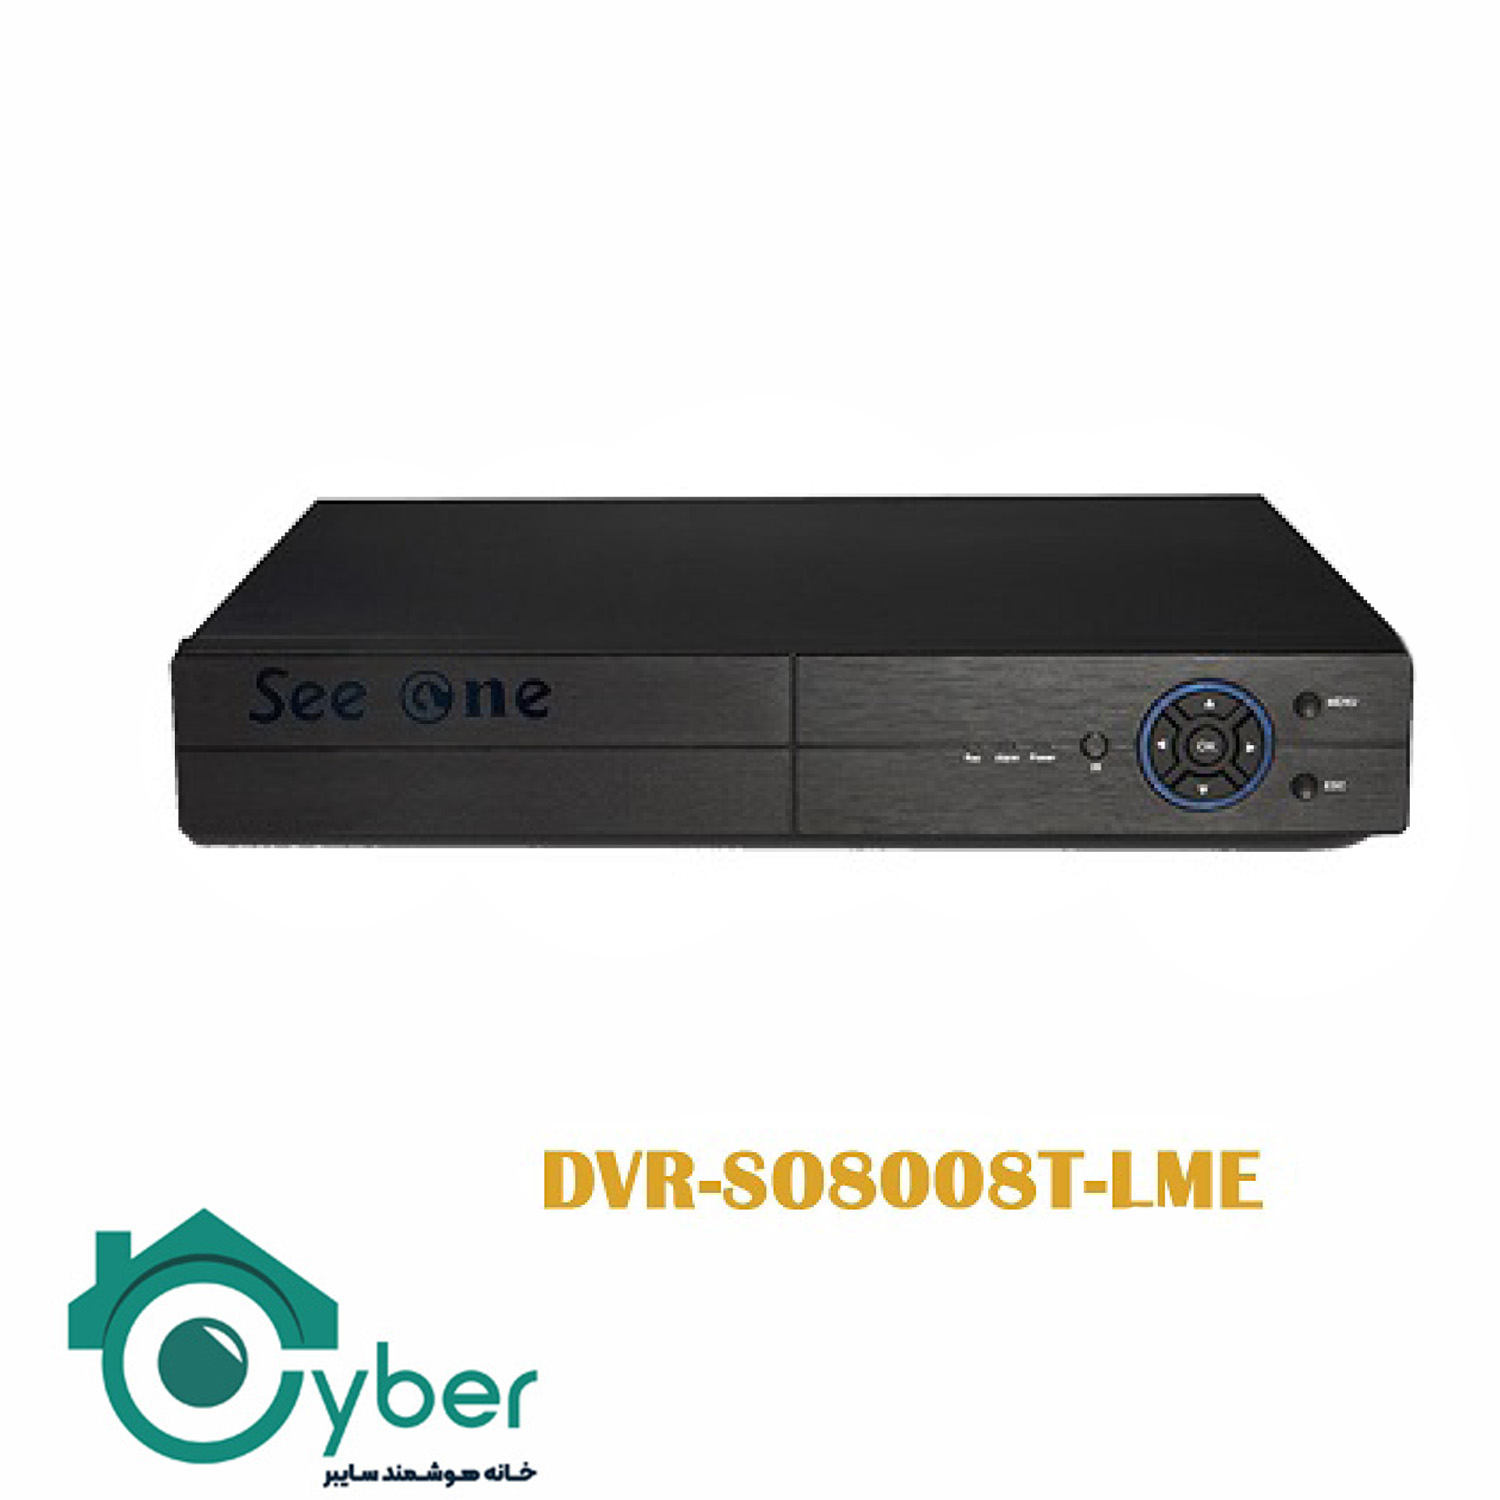 دستگاه ضبط تصاویر 8 کانال DVR-S08008T-LME مدل Seeone سیوان